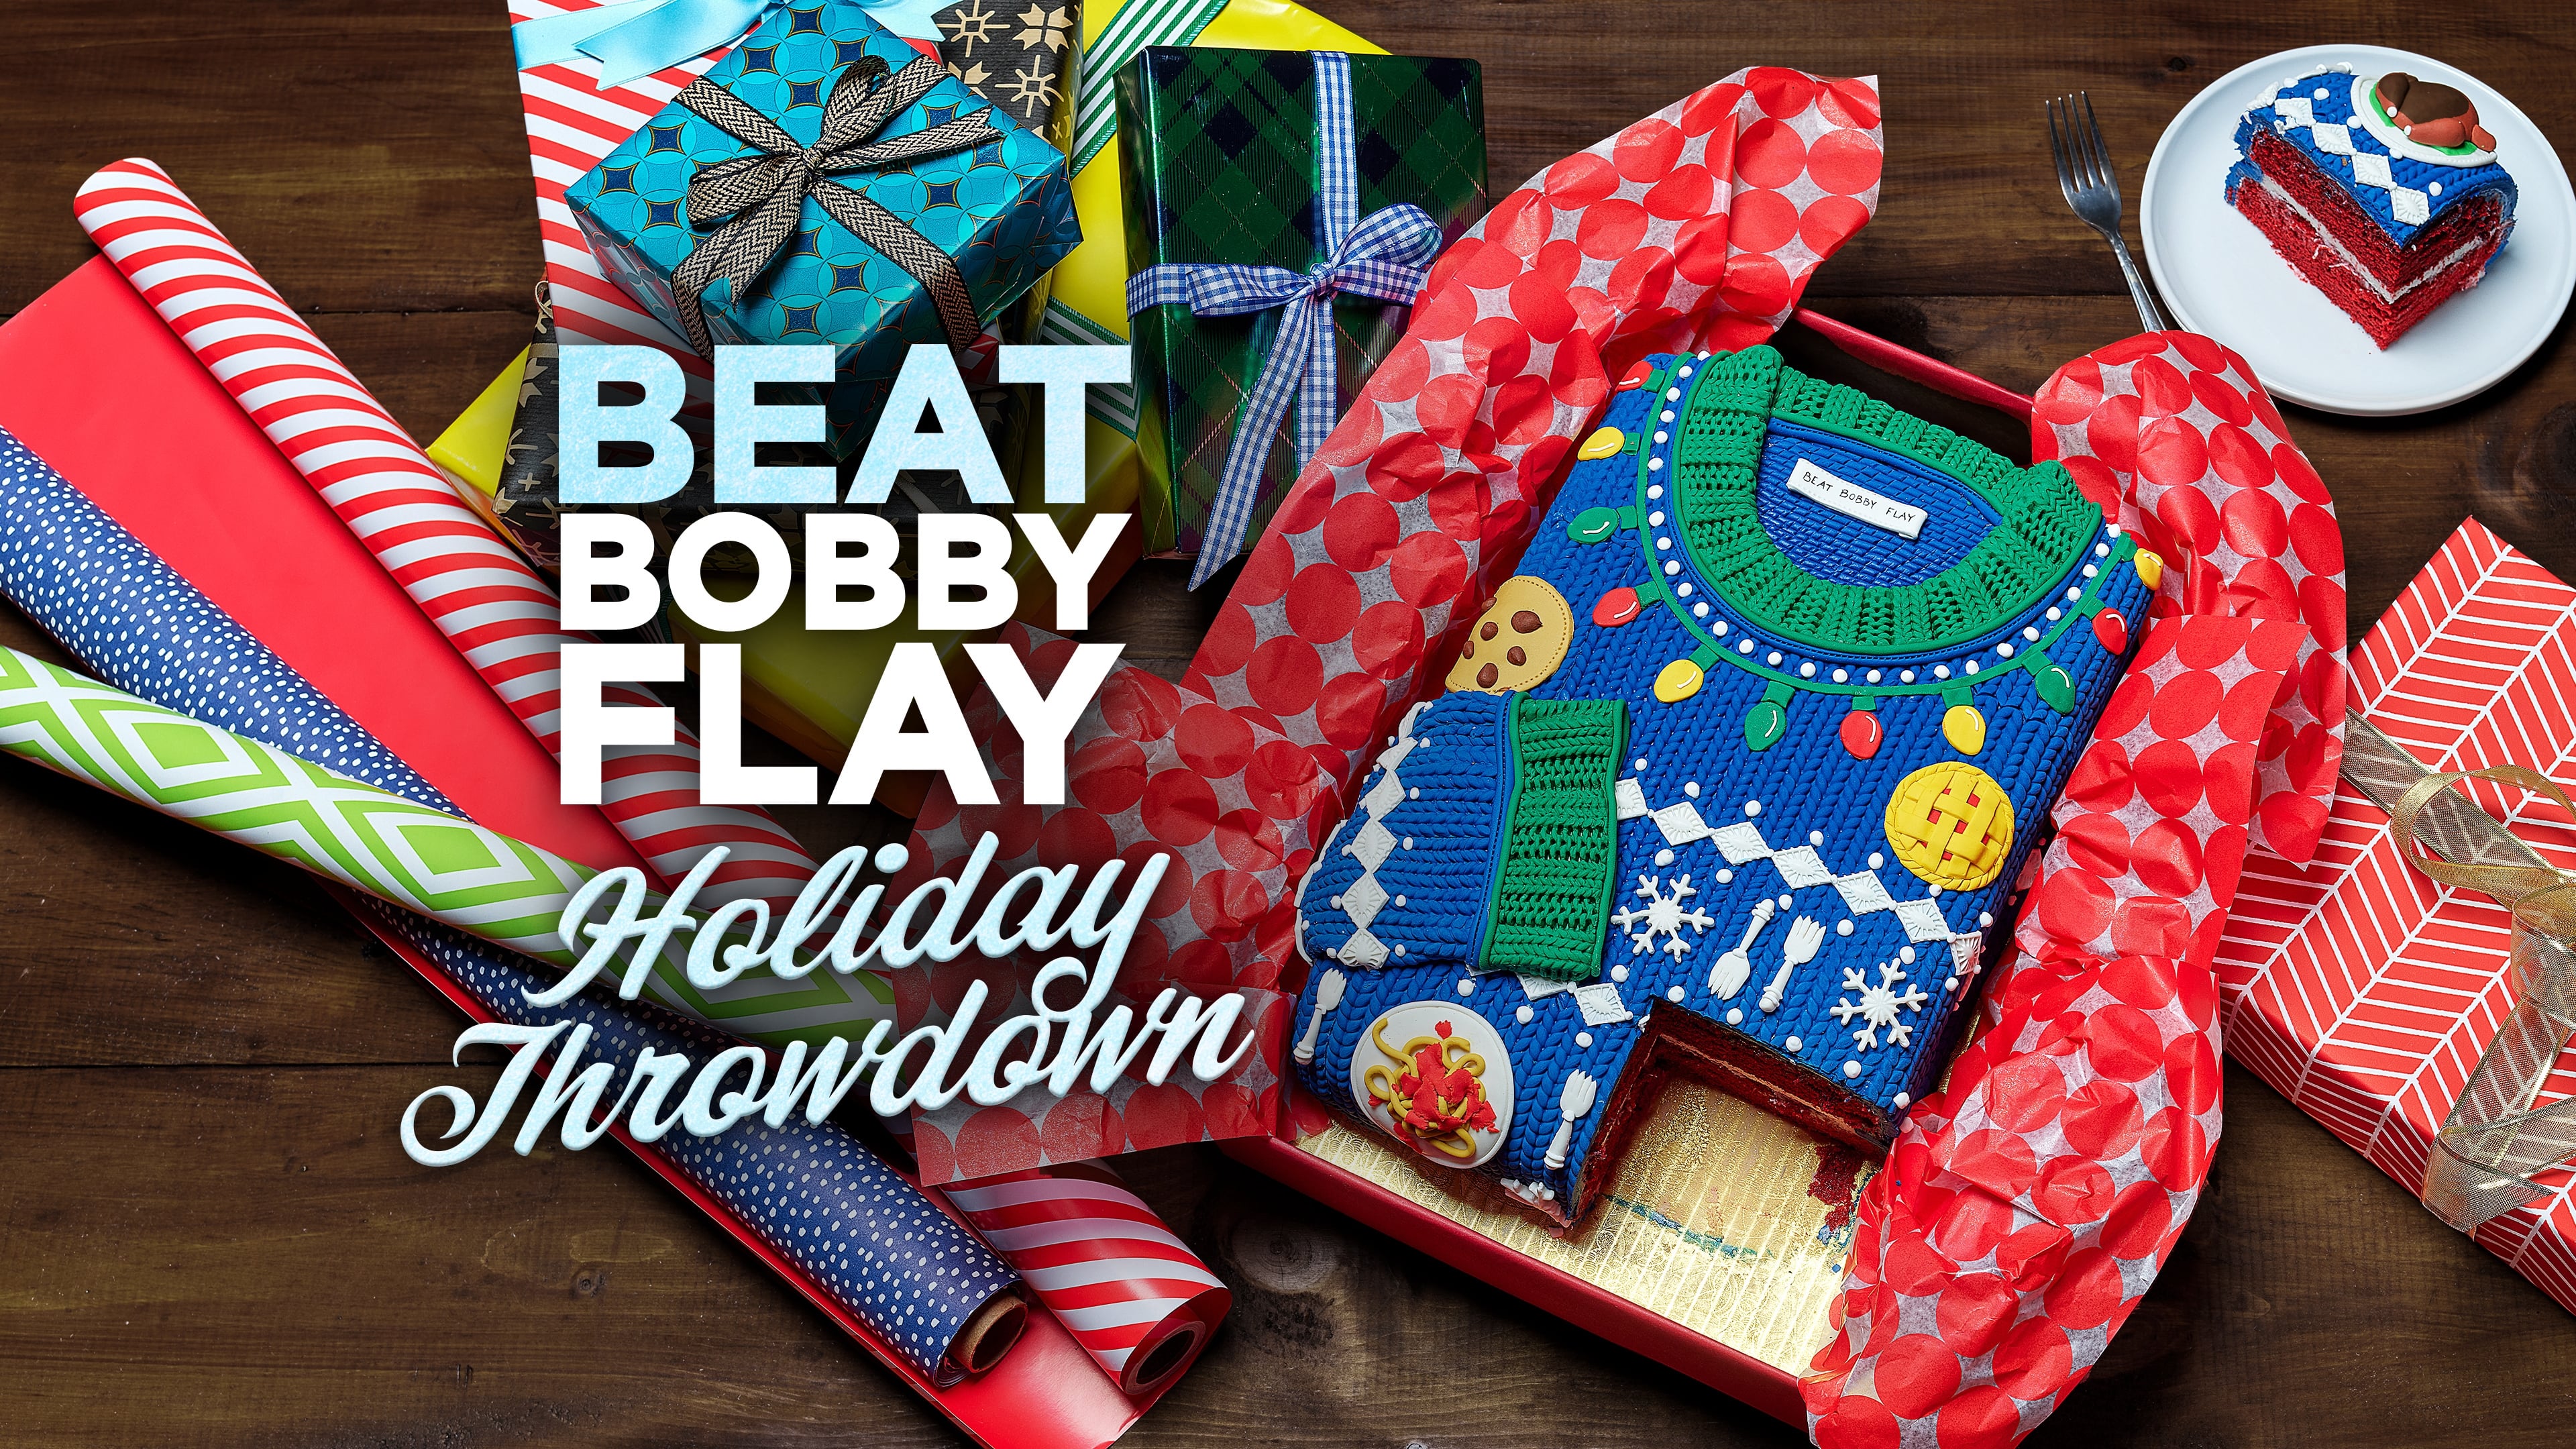 Beat Bobby Flay - Season 12